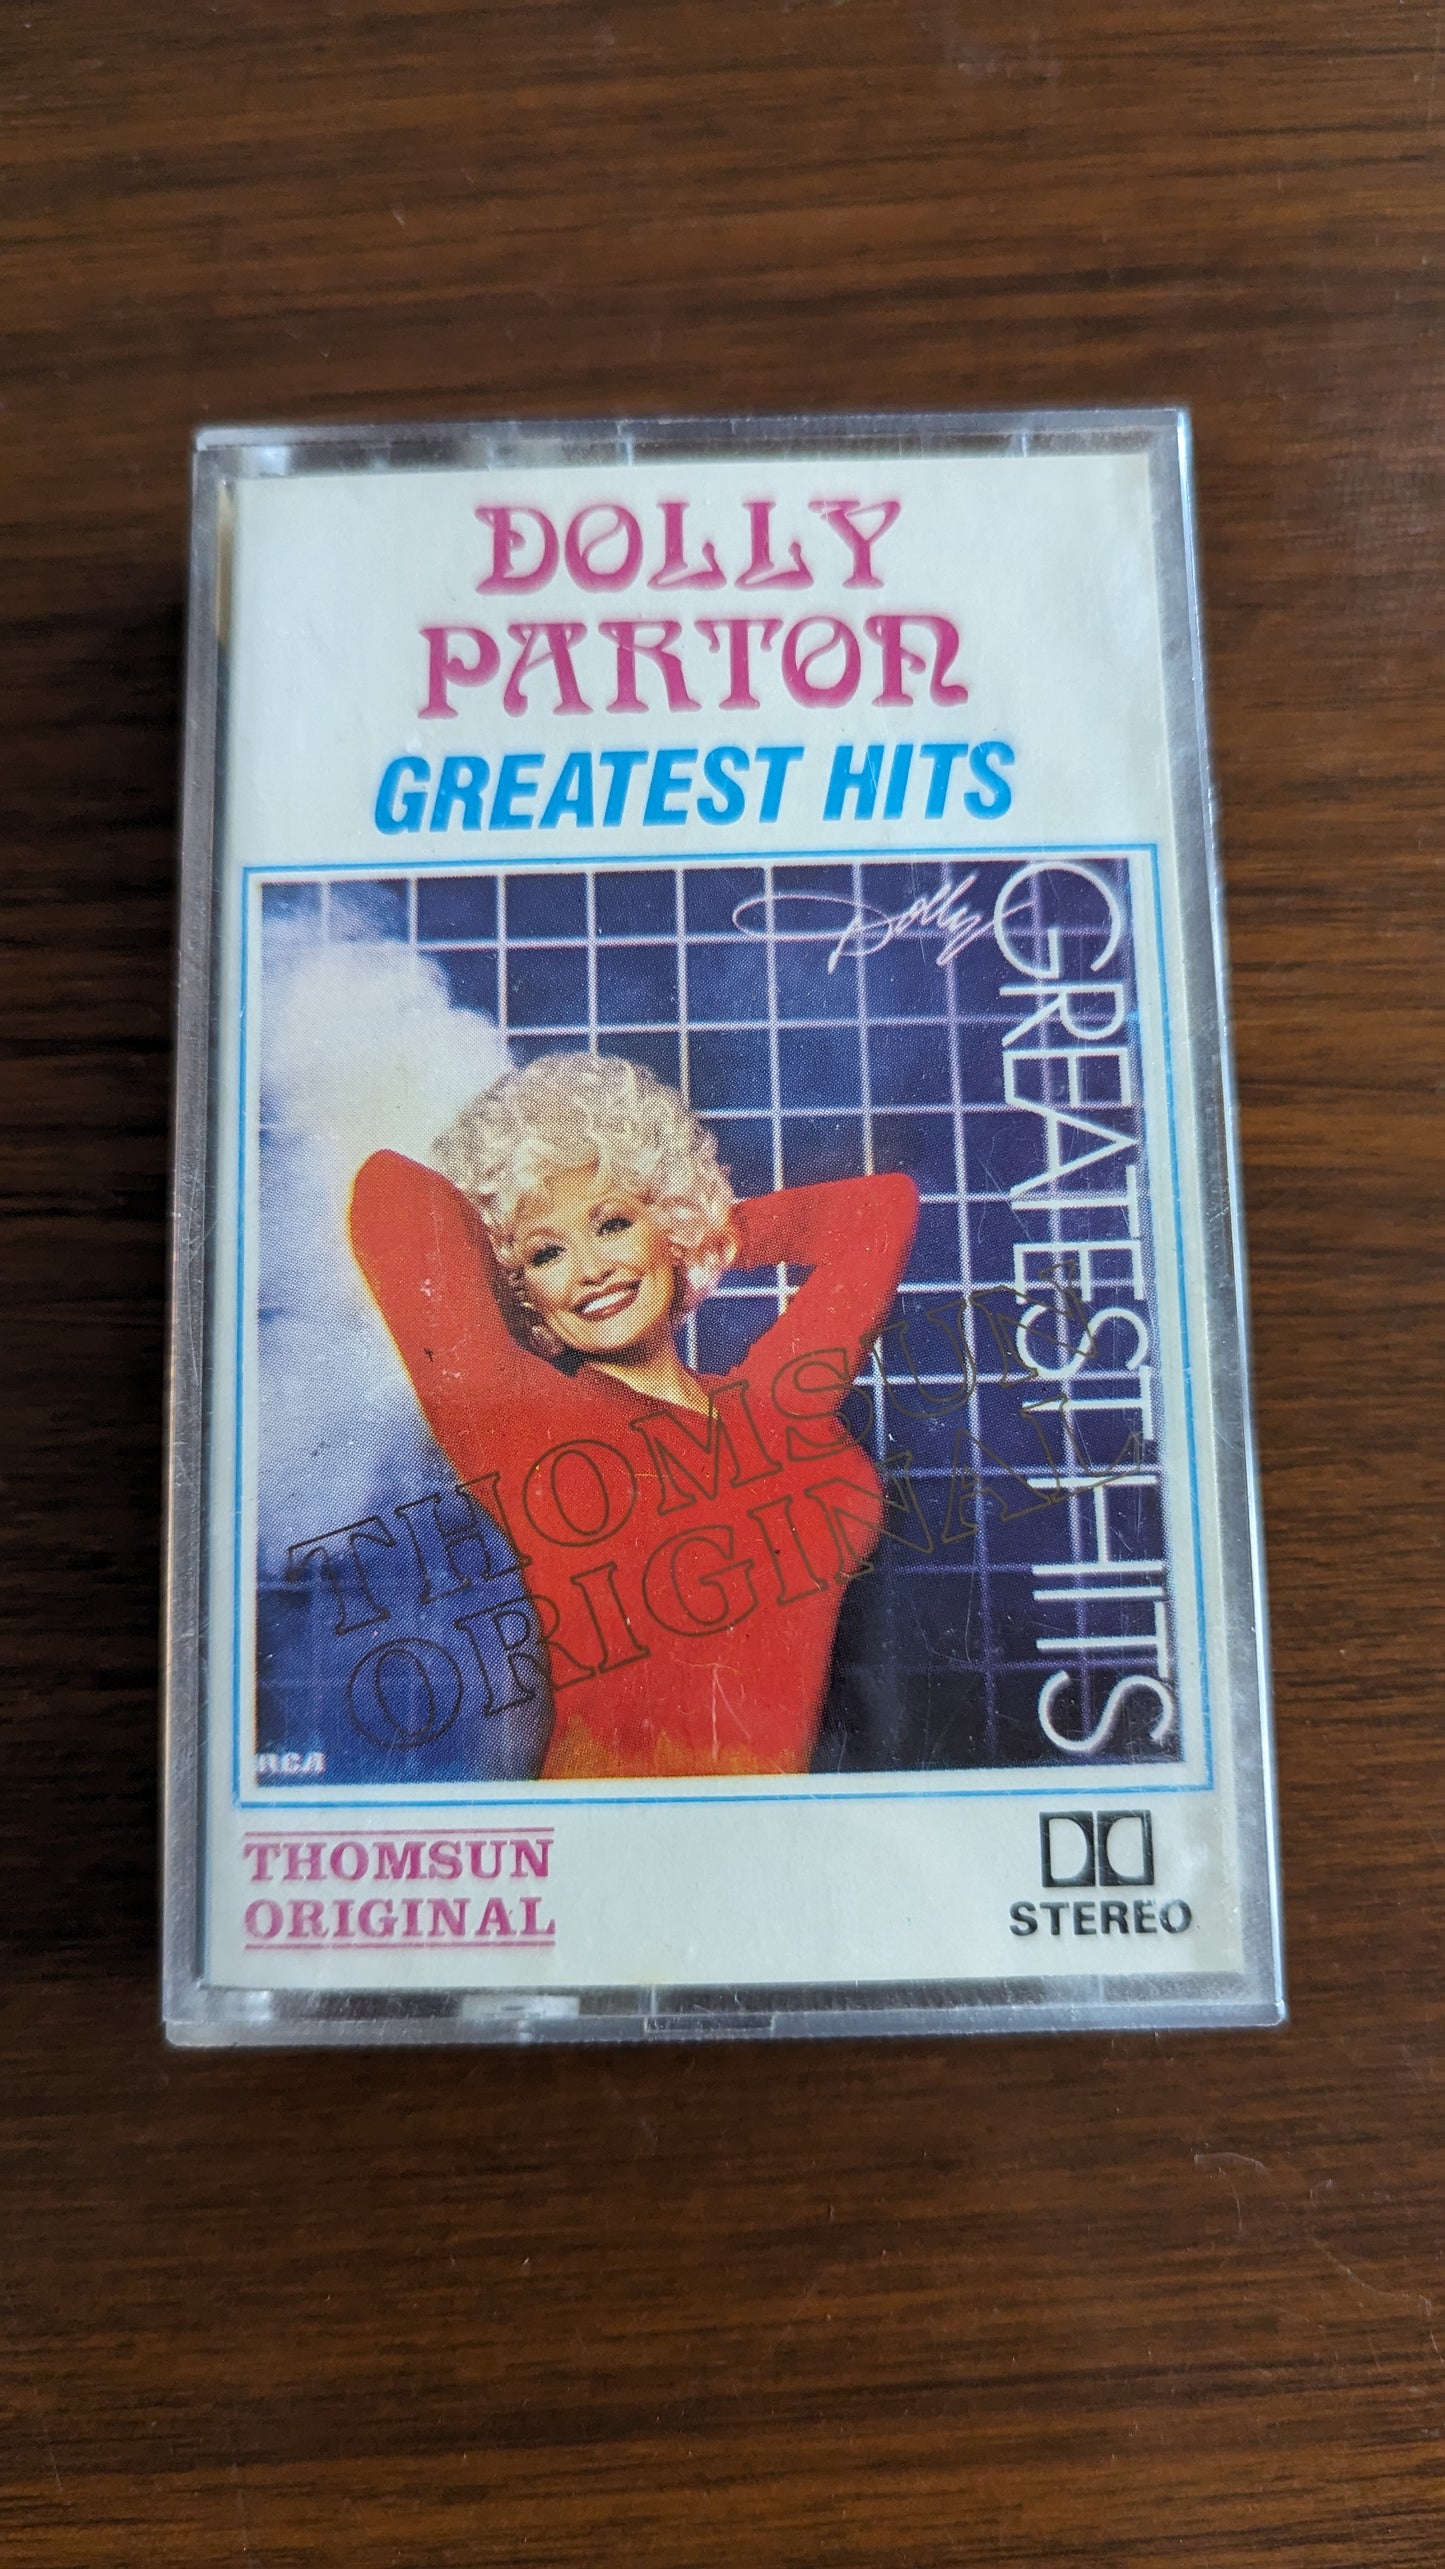 Dolly Parton Greatest Hits